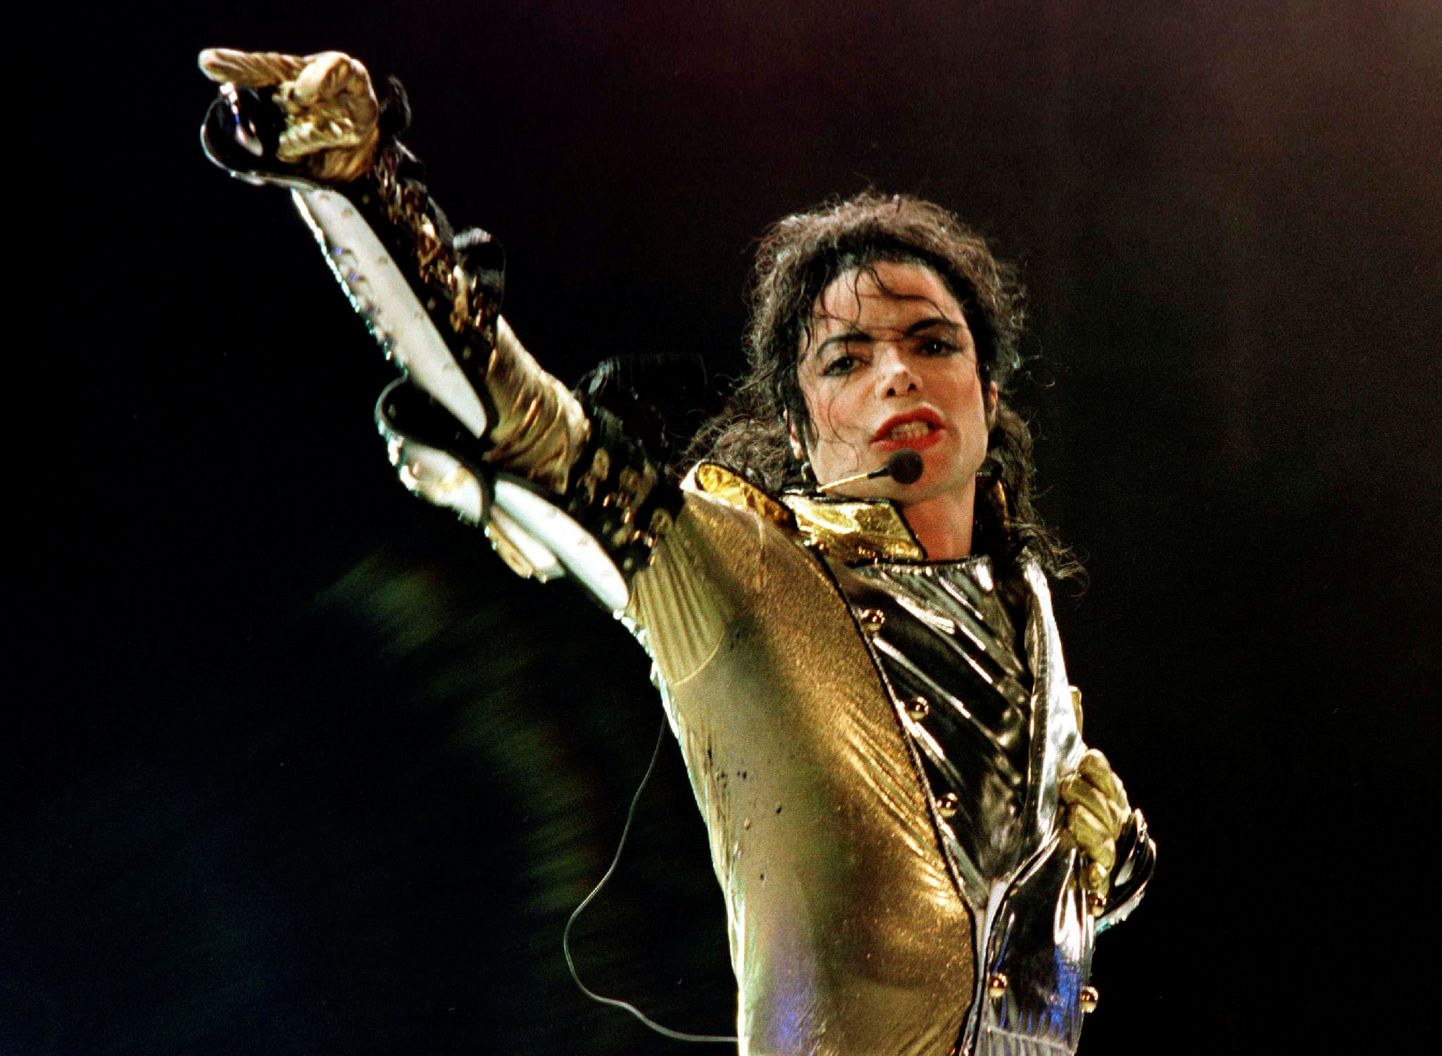 USA poppstaar Michael Jackson 1997.